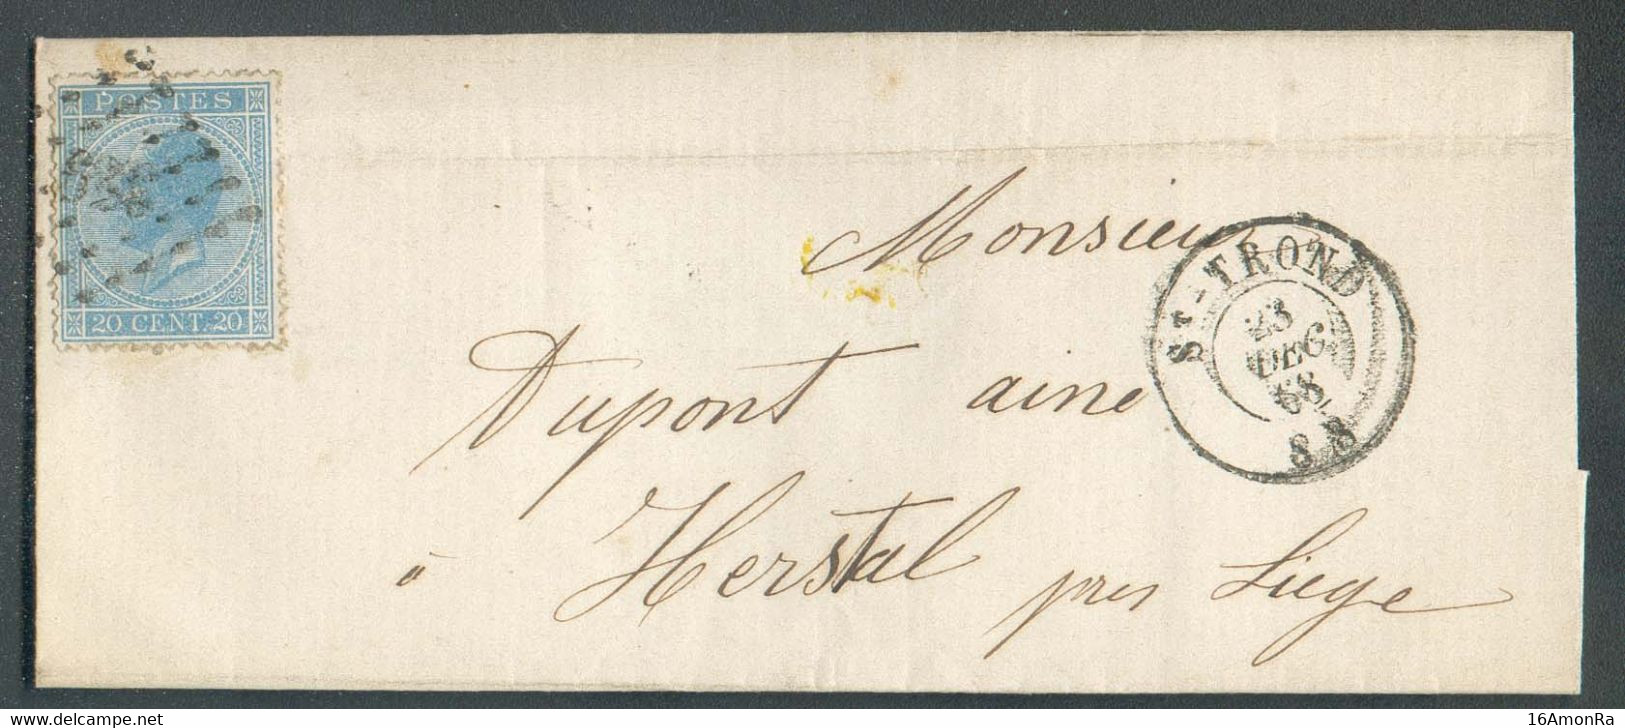 N°18 Obl. LP. Sur Lettre De ST-TROND le 23 Décembre 1868 Vers Herstal. - 19059 - 1865-1866 Linksprofil